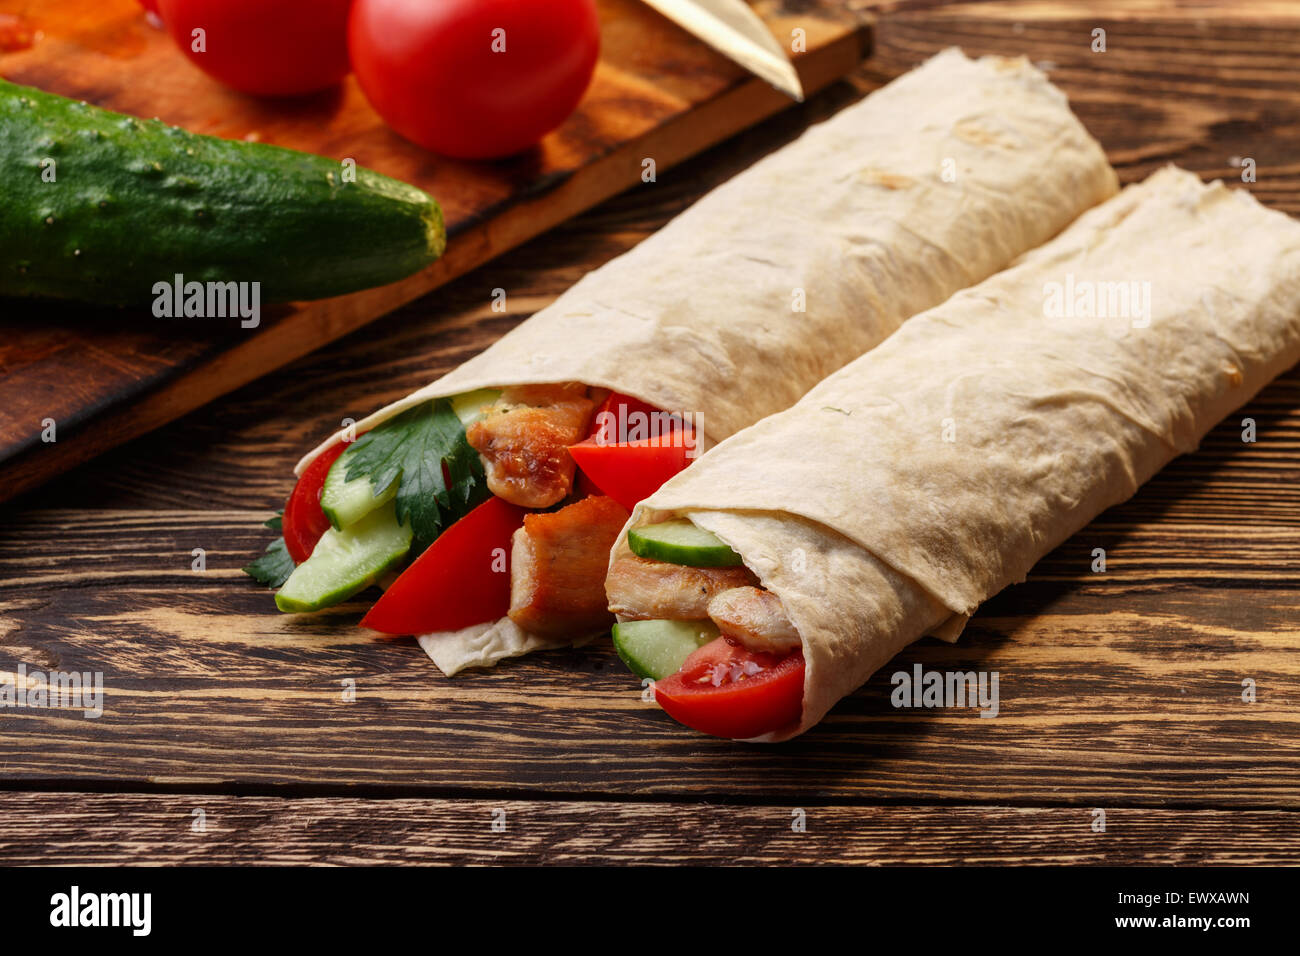 Wrap shawarma traditionnel avec du poulet et des légumes près de ses ingrédients Banque D'Images